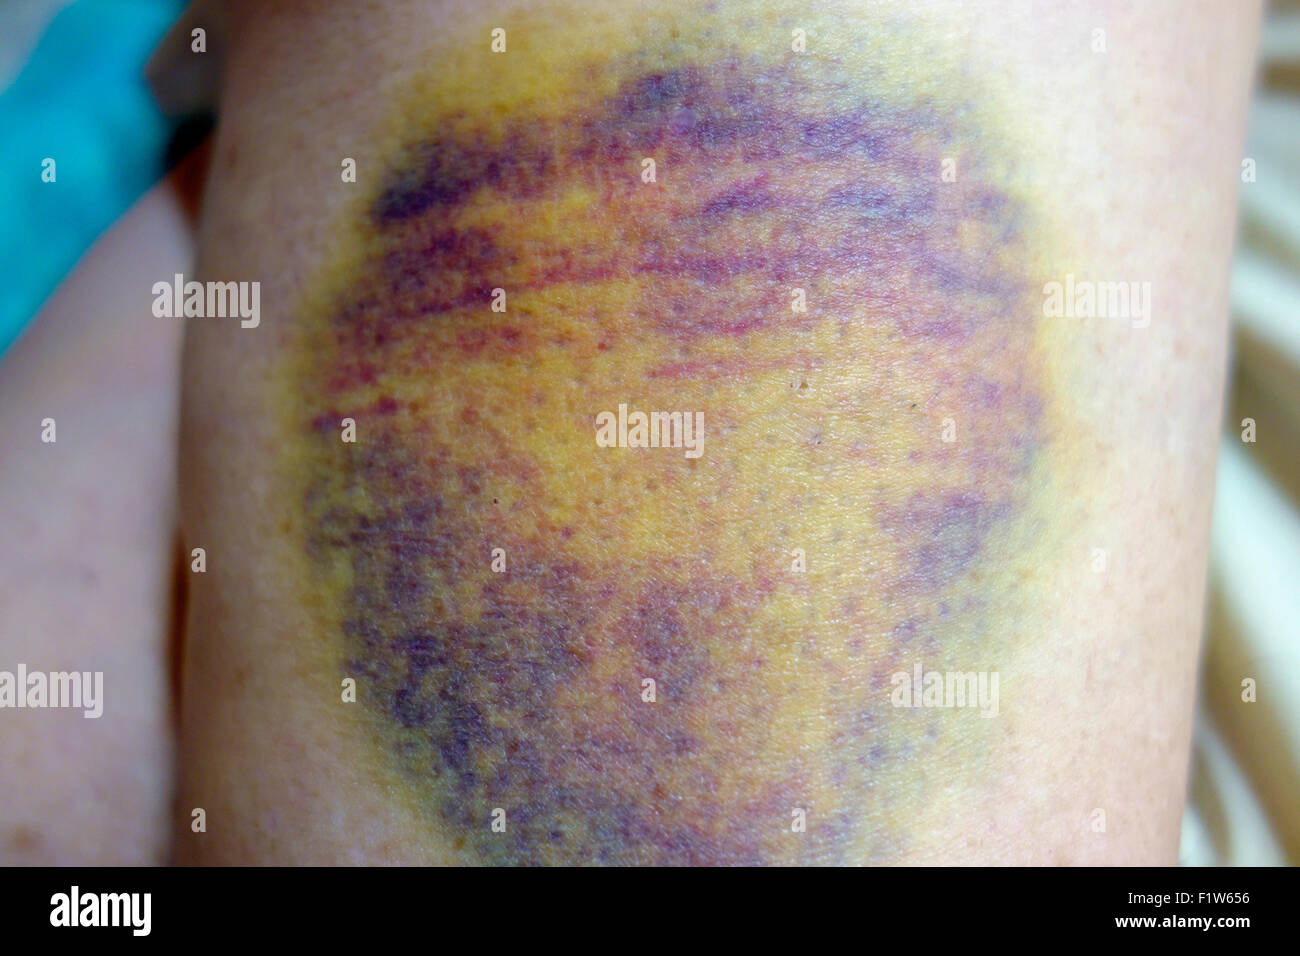 Einen sehr großen Bluterguss, Prellung oder Hämatom am Bein oder Oberschenkel Haut einer Frau mit schwarzen, blauen und gelben Verfärbung Stockfoto